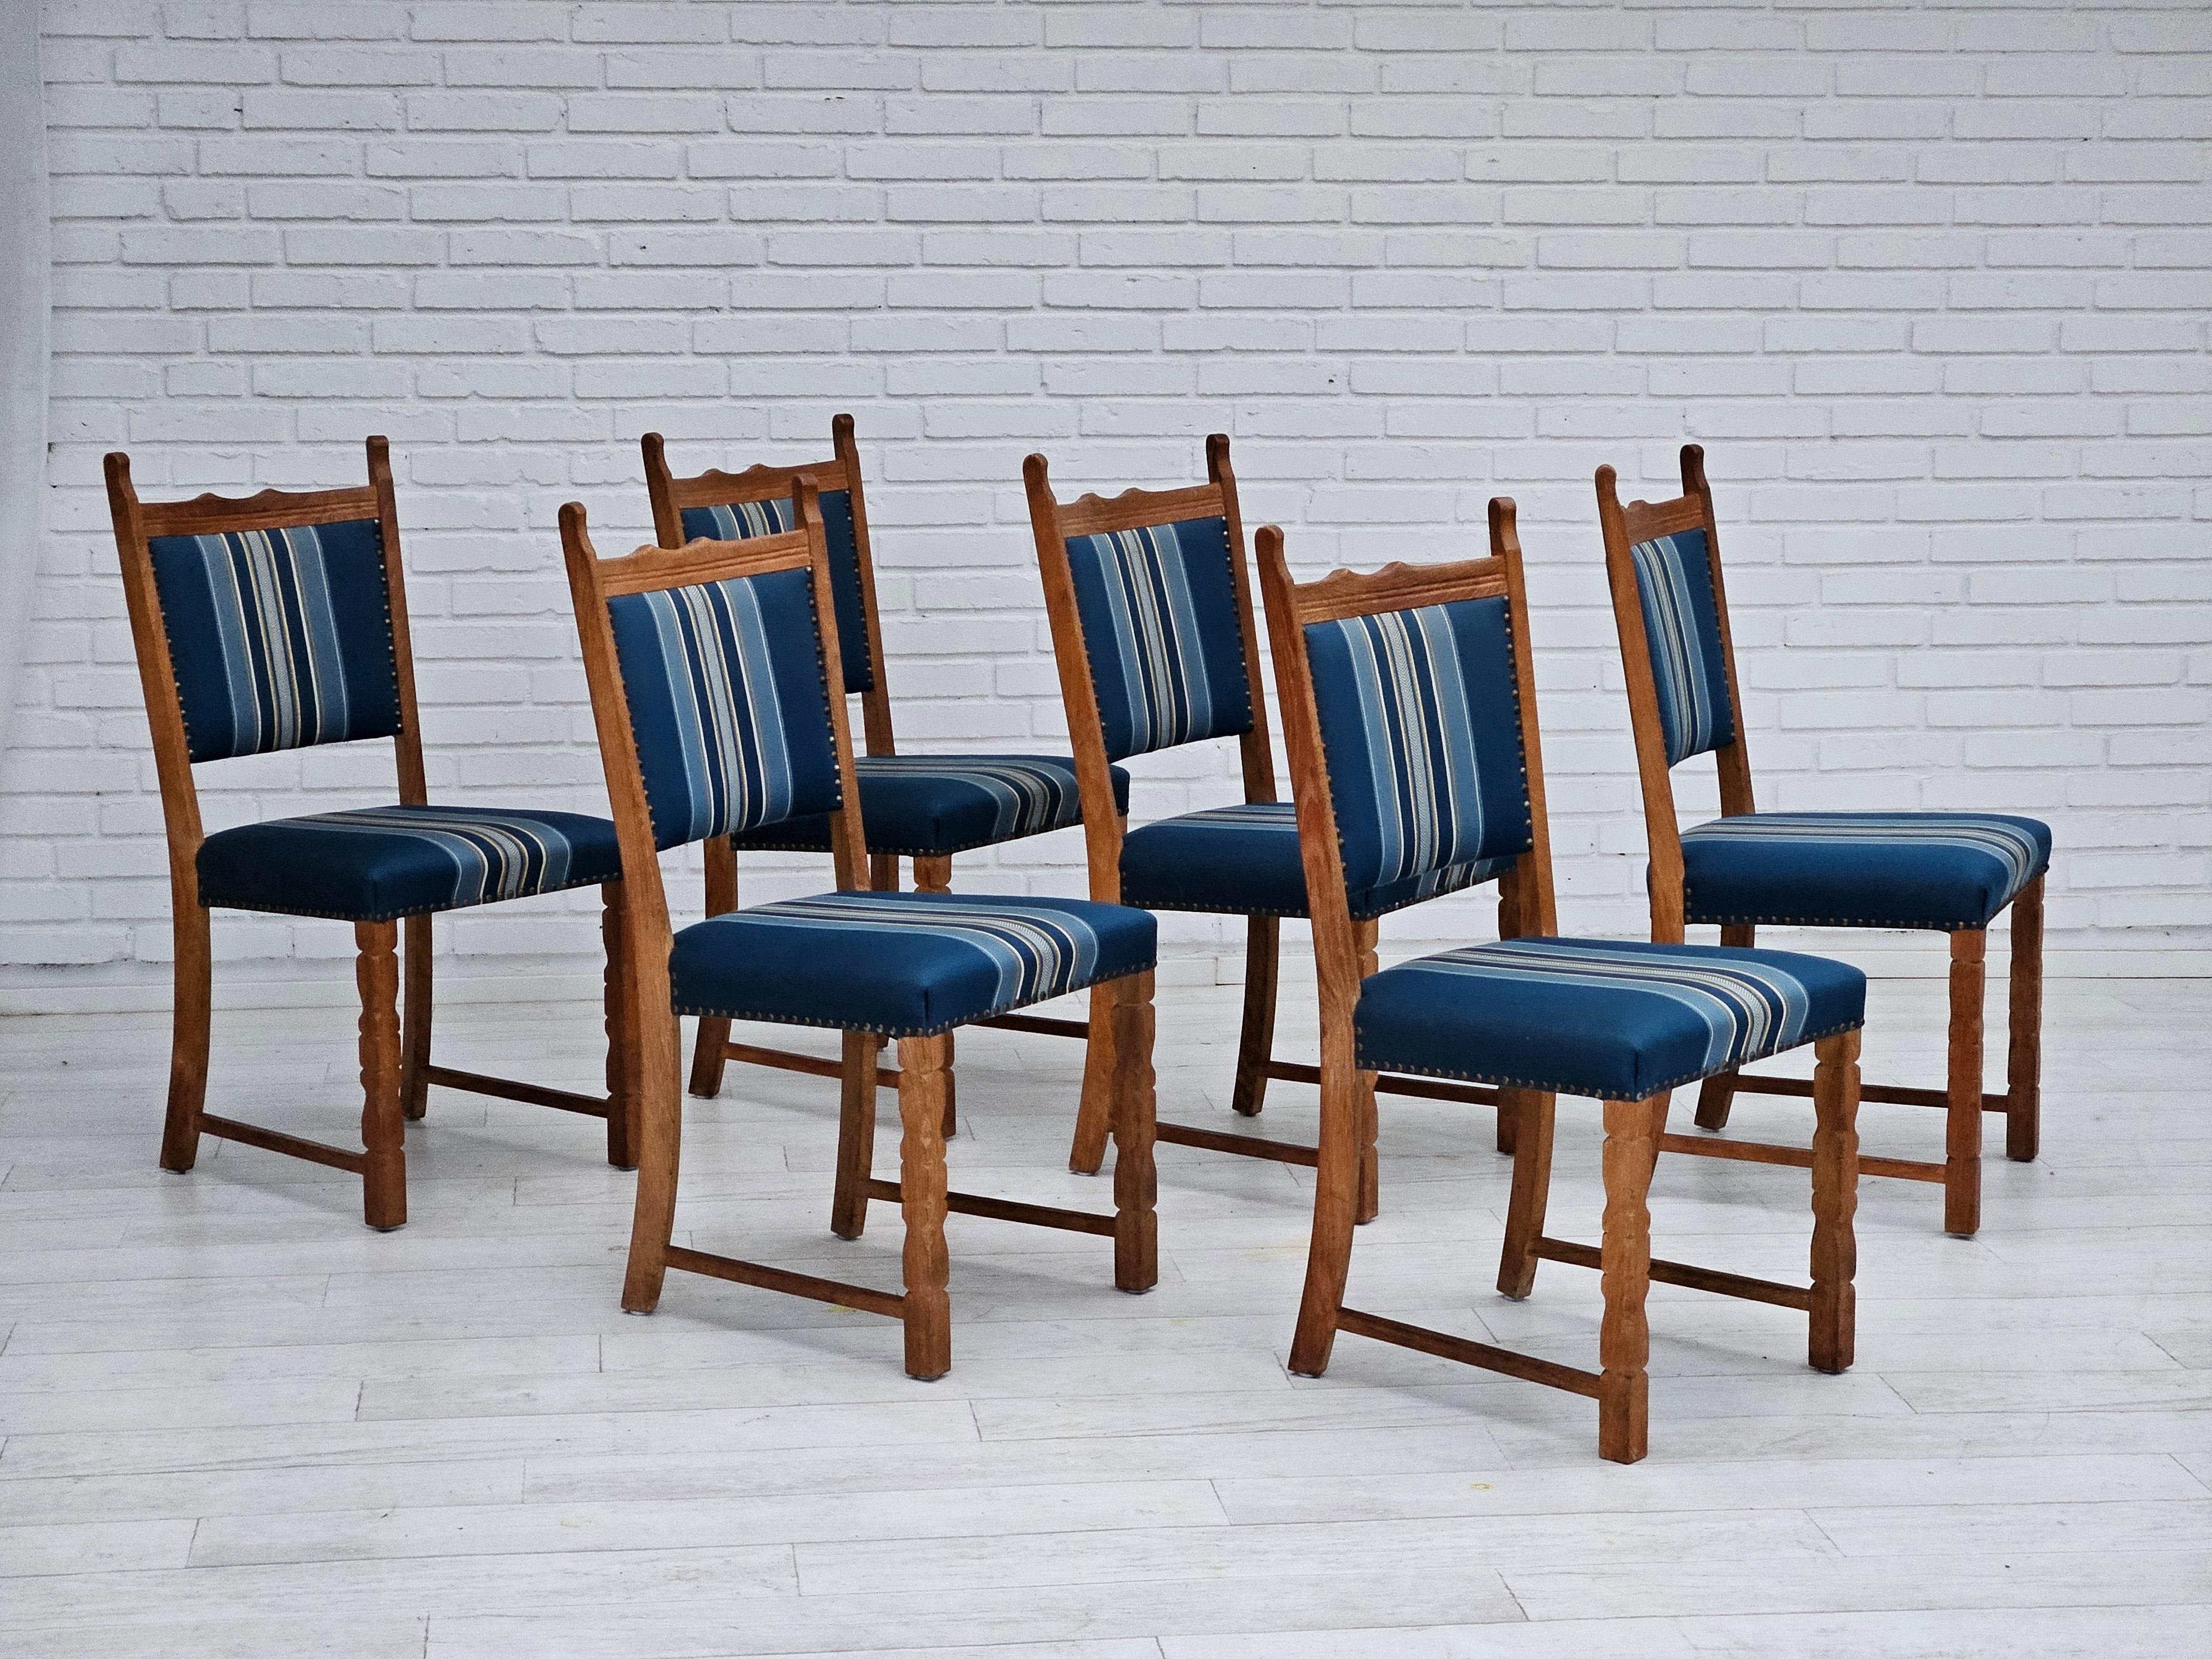 1970er Jahre, Satz von 6 dänischen Esszimmerstühlen in sehr gutem Originalzustand: keine Gerüche und keine Flecken. Blau/Multicolor-Möbel Wollstoff, Eichenholz. Hergestellt von einem dänischen Möbelhersteller in den Jahren 1965-1970.